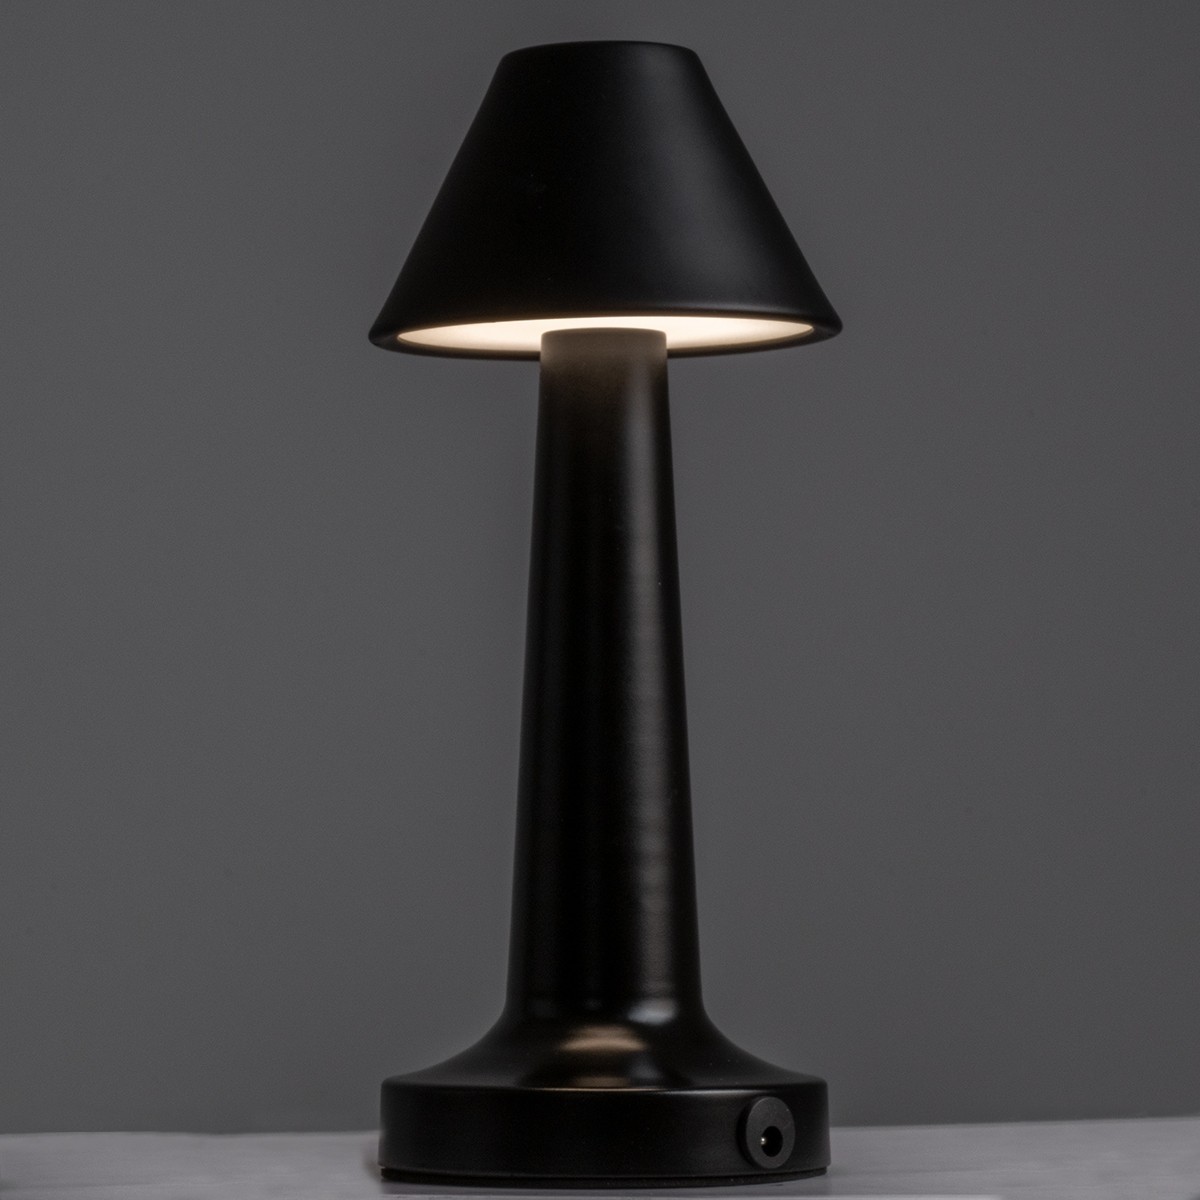 LED Επιτραπέζιο Φωτιστικό Μαύρο 1.5W MOLLY Επαναφορτιζόμενο με Μπαταρία και Διακόπτη Αφής Dimmable -  Φ10 x 23cm